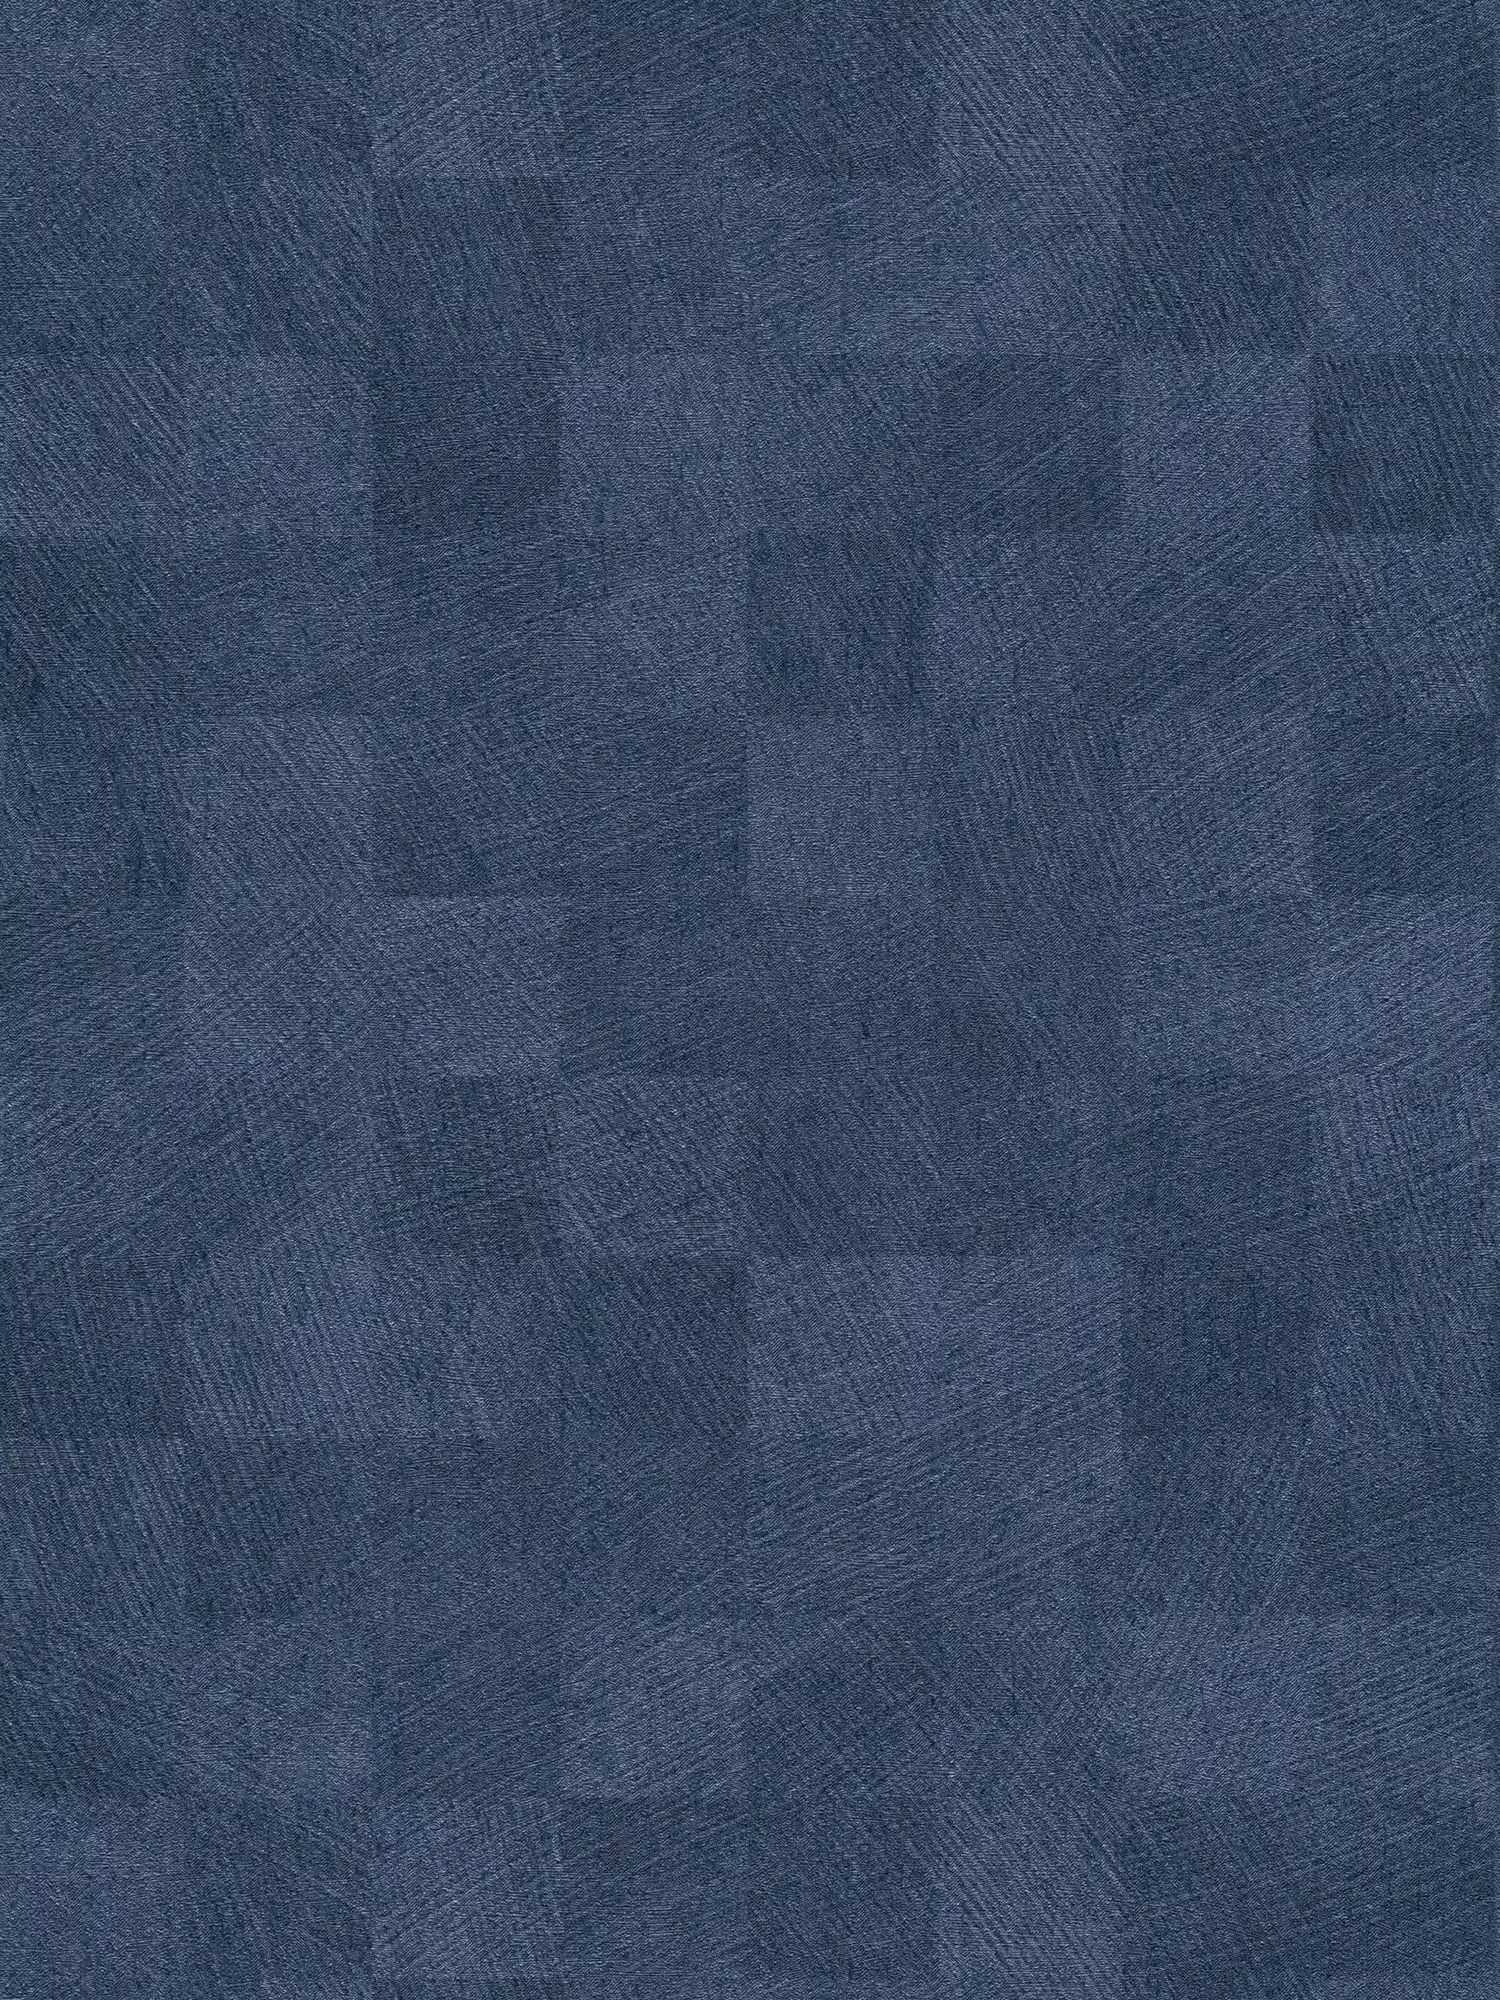 Karierte Tapete Nachtblau mit Struktur & Glanz-Effekt – Blau
